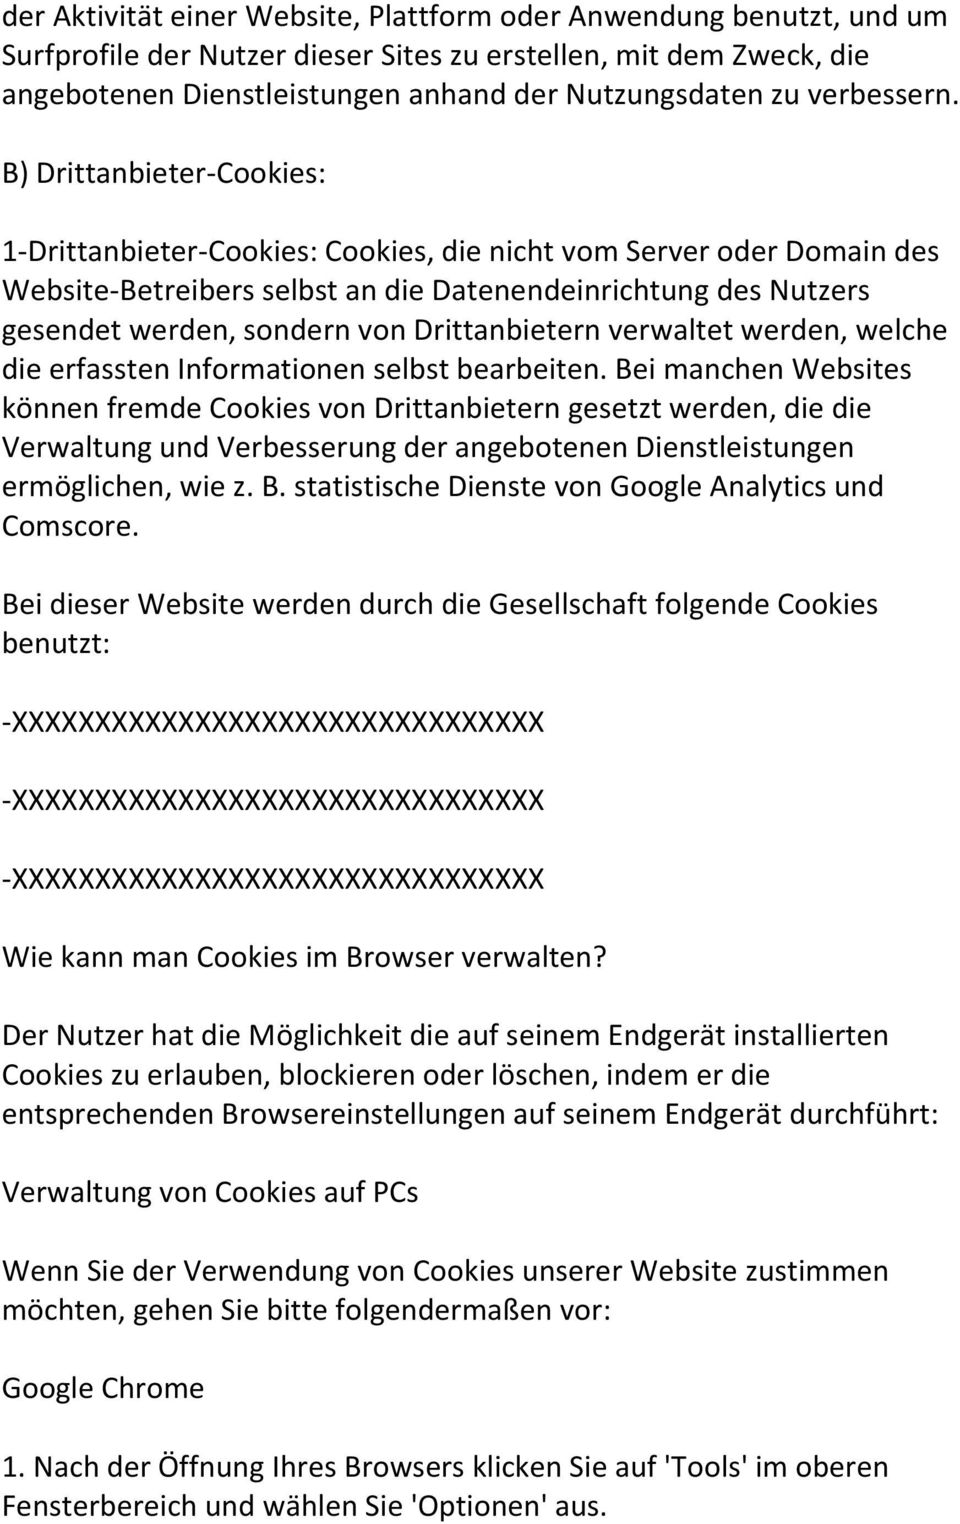 B) Drittanbieter-Cookies: 1-Drittanbieter-Cookies: Cookies, die nicht vom Server oder Domain des Website-Betreibers selbst an die Datenendeinrichtung des Nutzers gesendet werden, sondern von